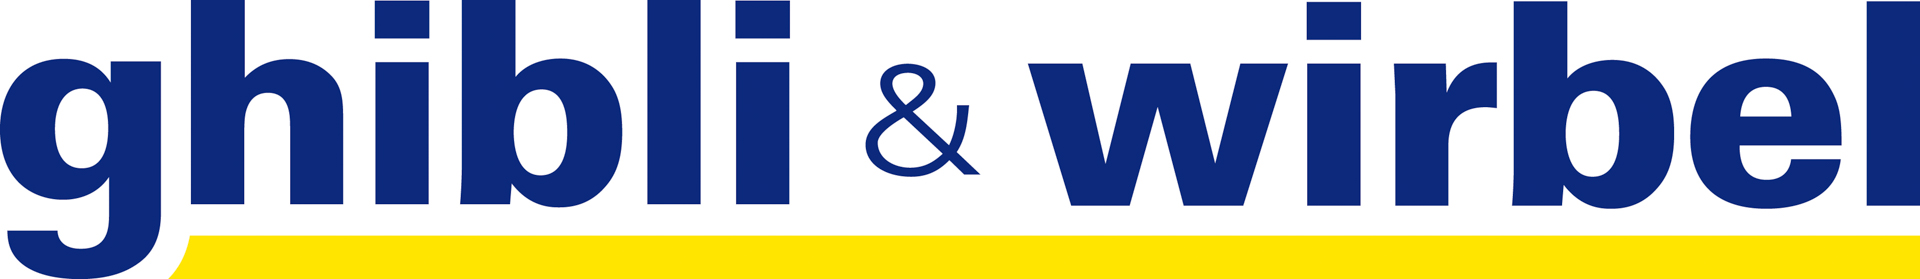 ghibli & wirbel logo